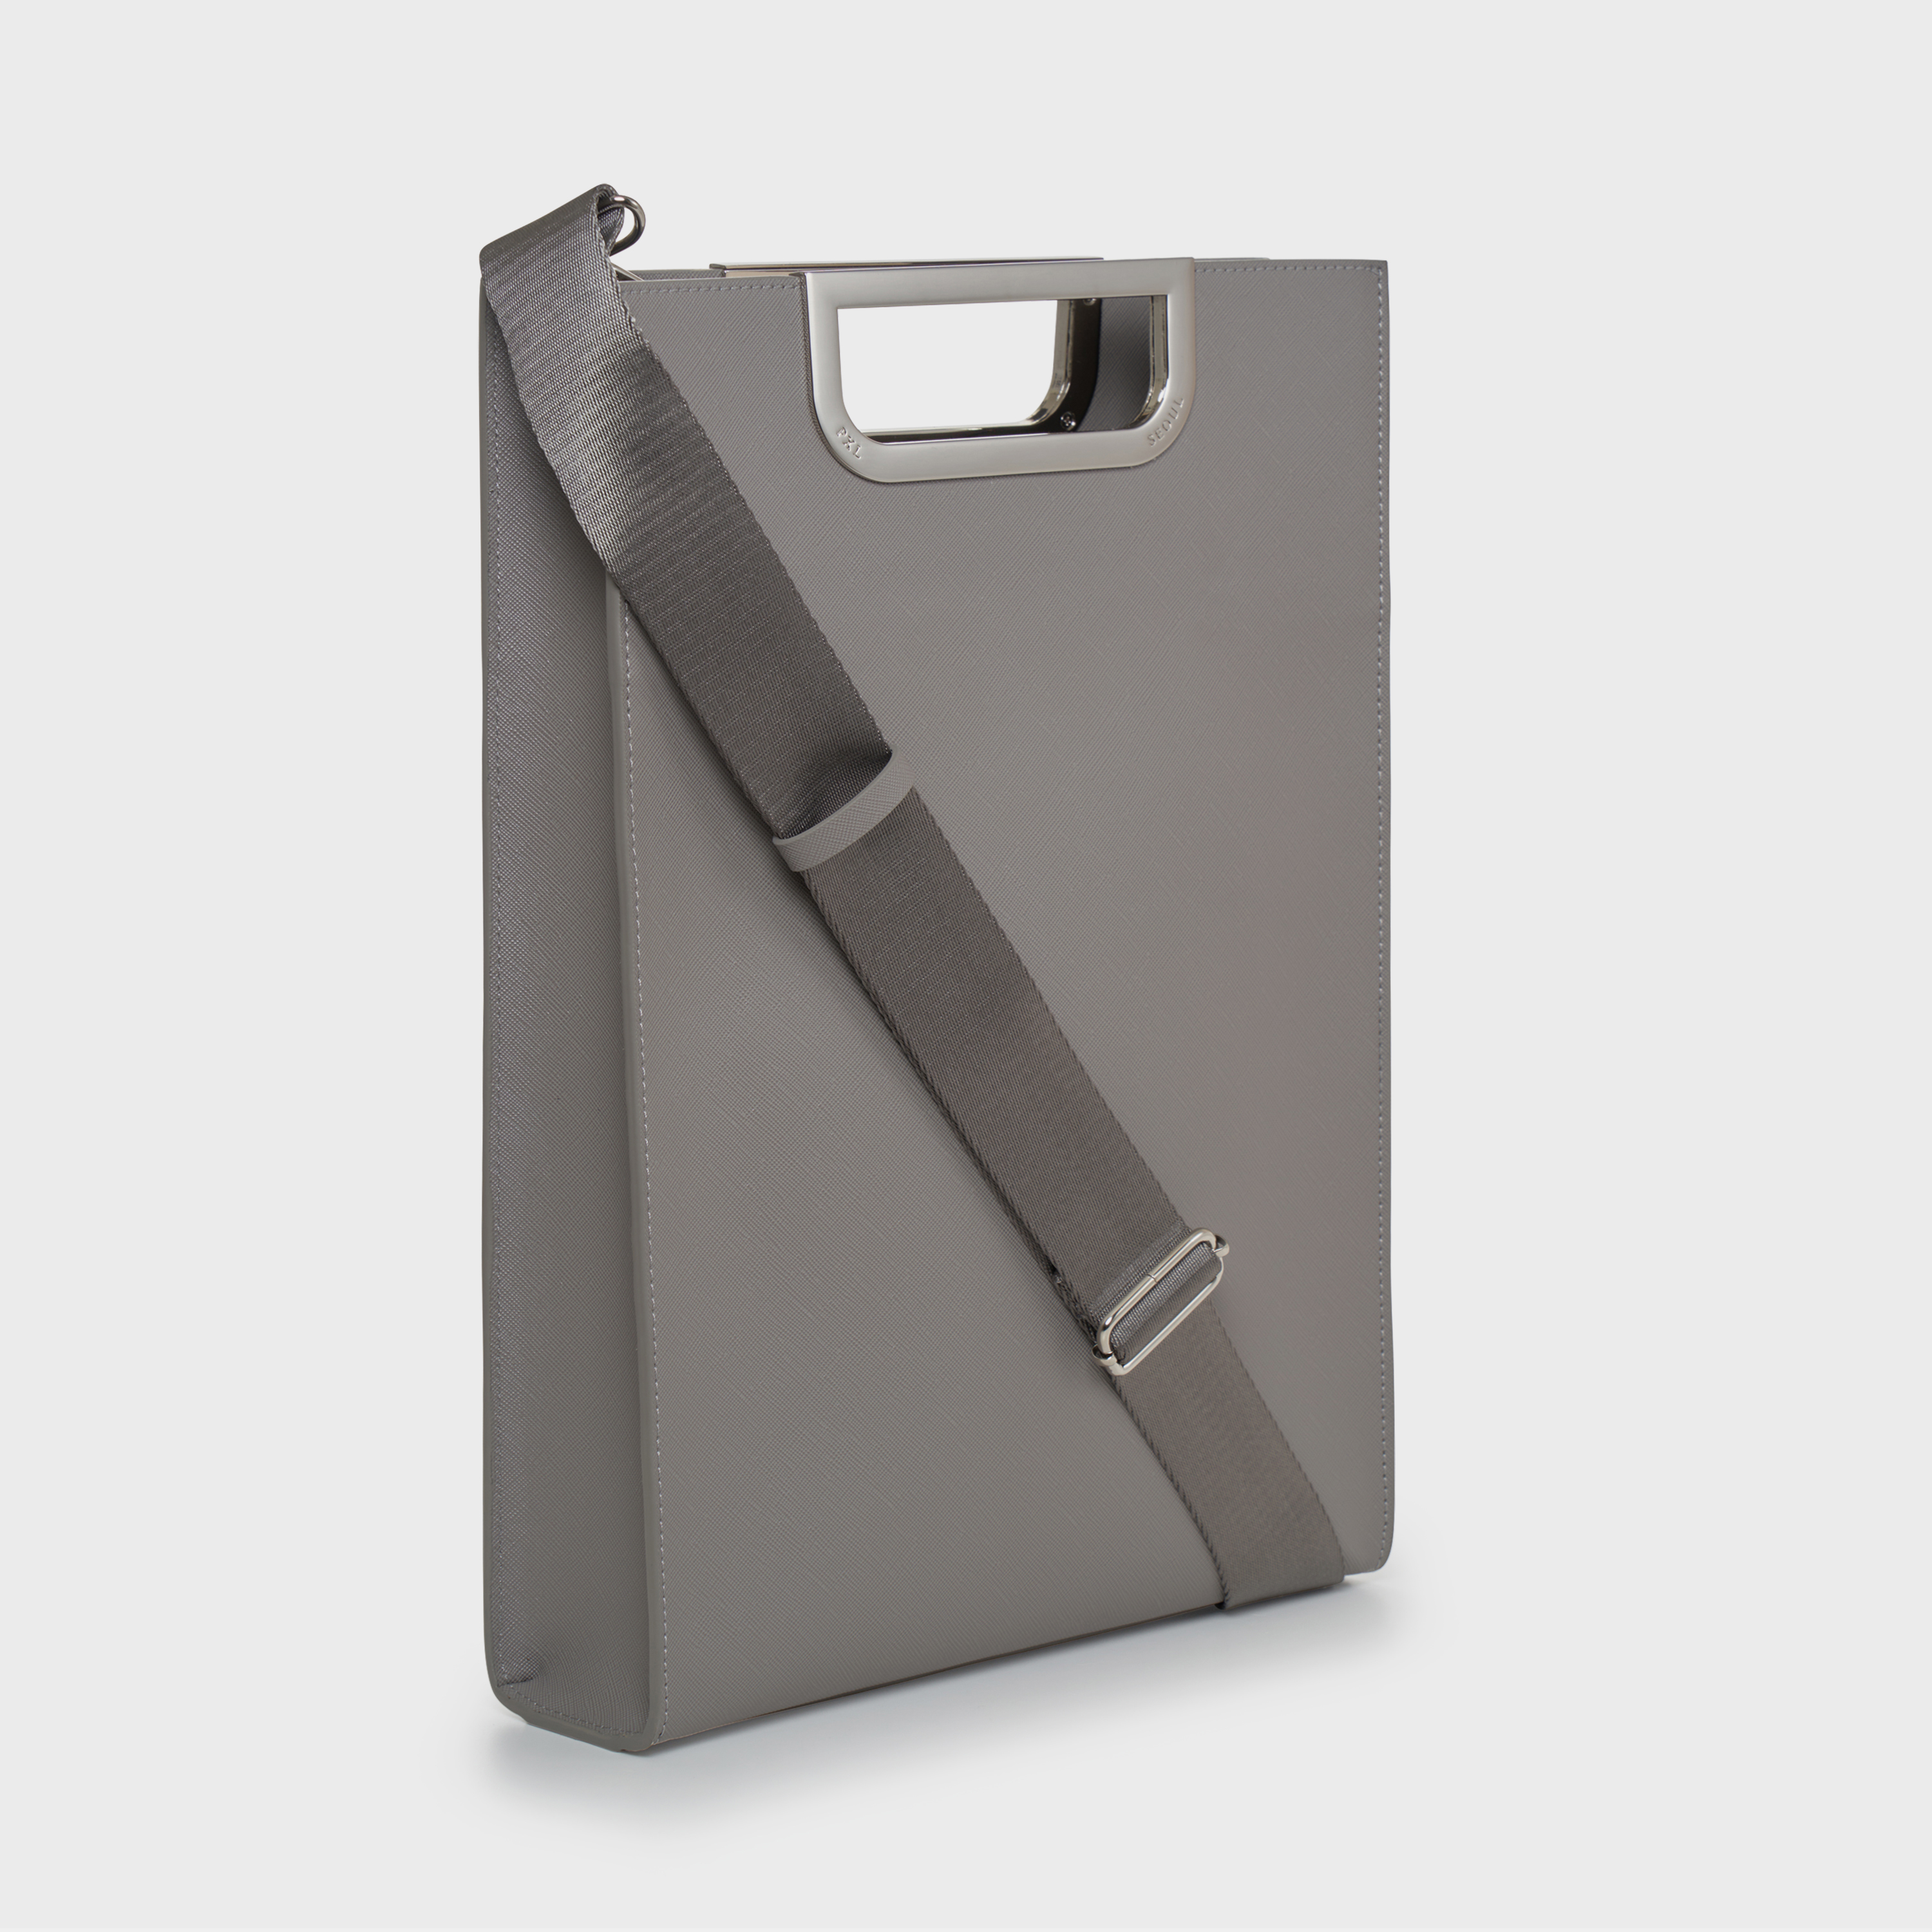 Metalgrip slim briefcase (Gray/Silver)